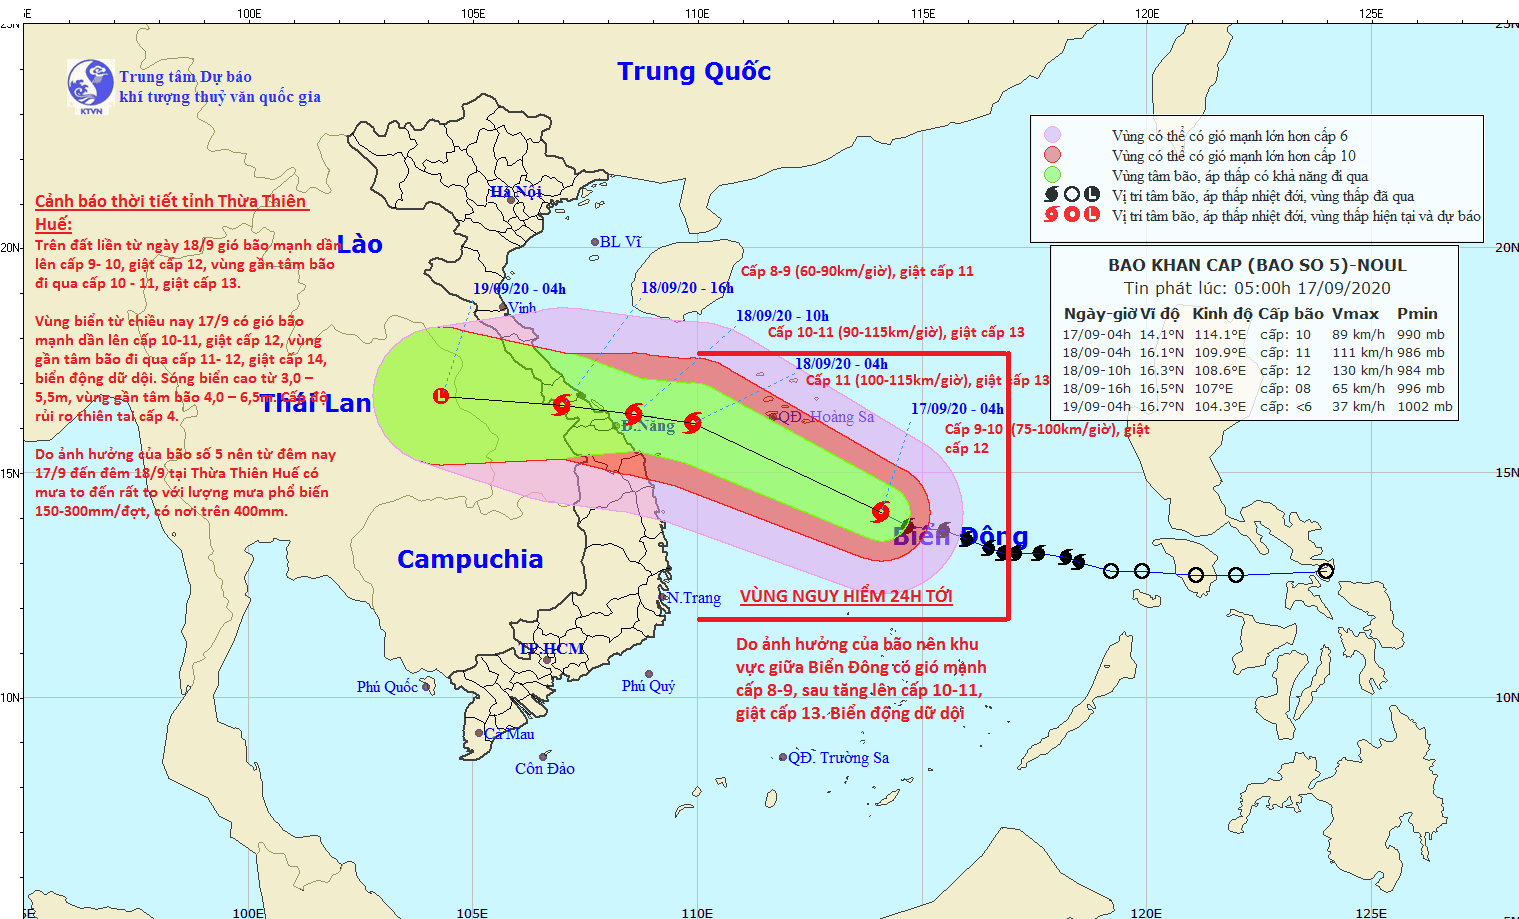 Cơn bão số 5 (Noul) dự kiến sẽ ảnh hưởng trực tiếp đến các tỉnh từ Quảng Bình đến Đà Nẵng vào ngày 18/9.